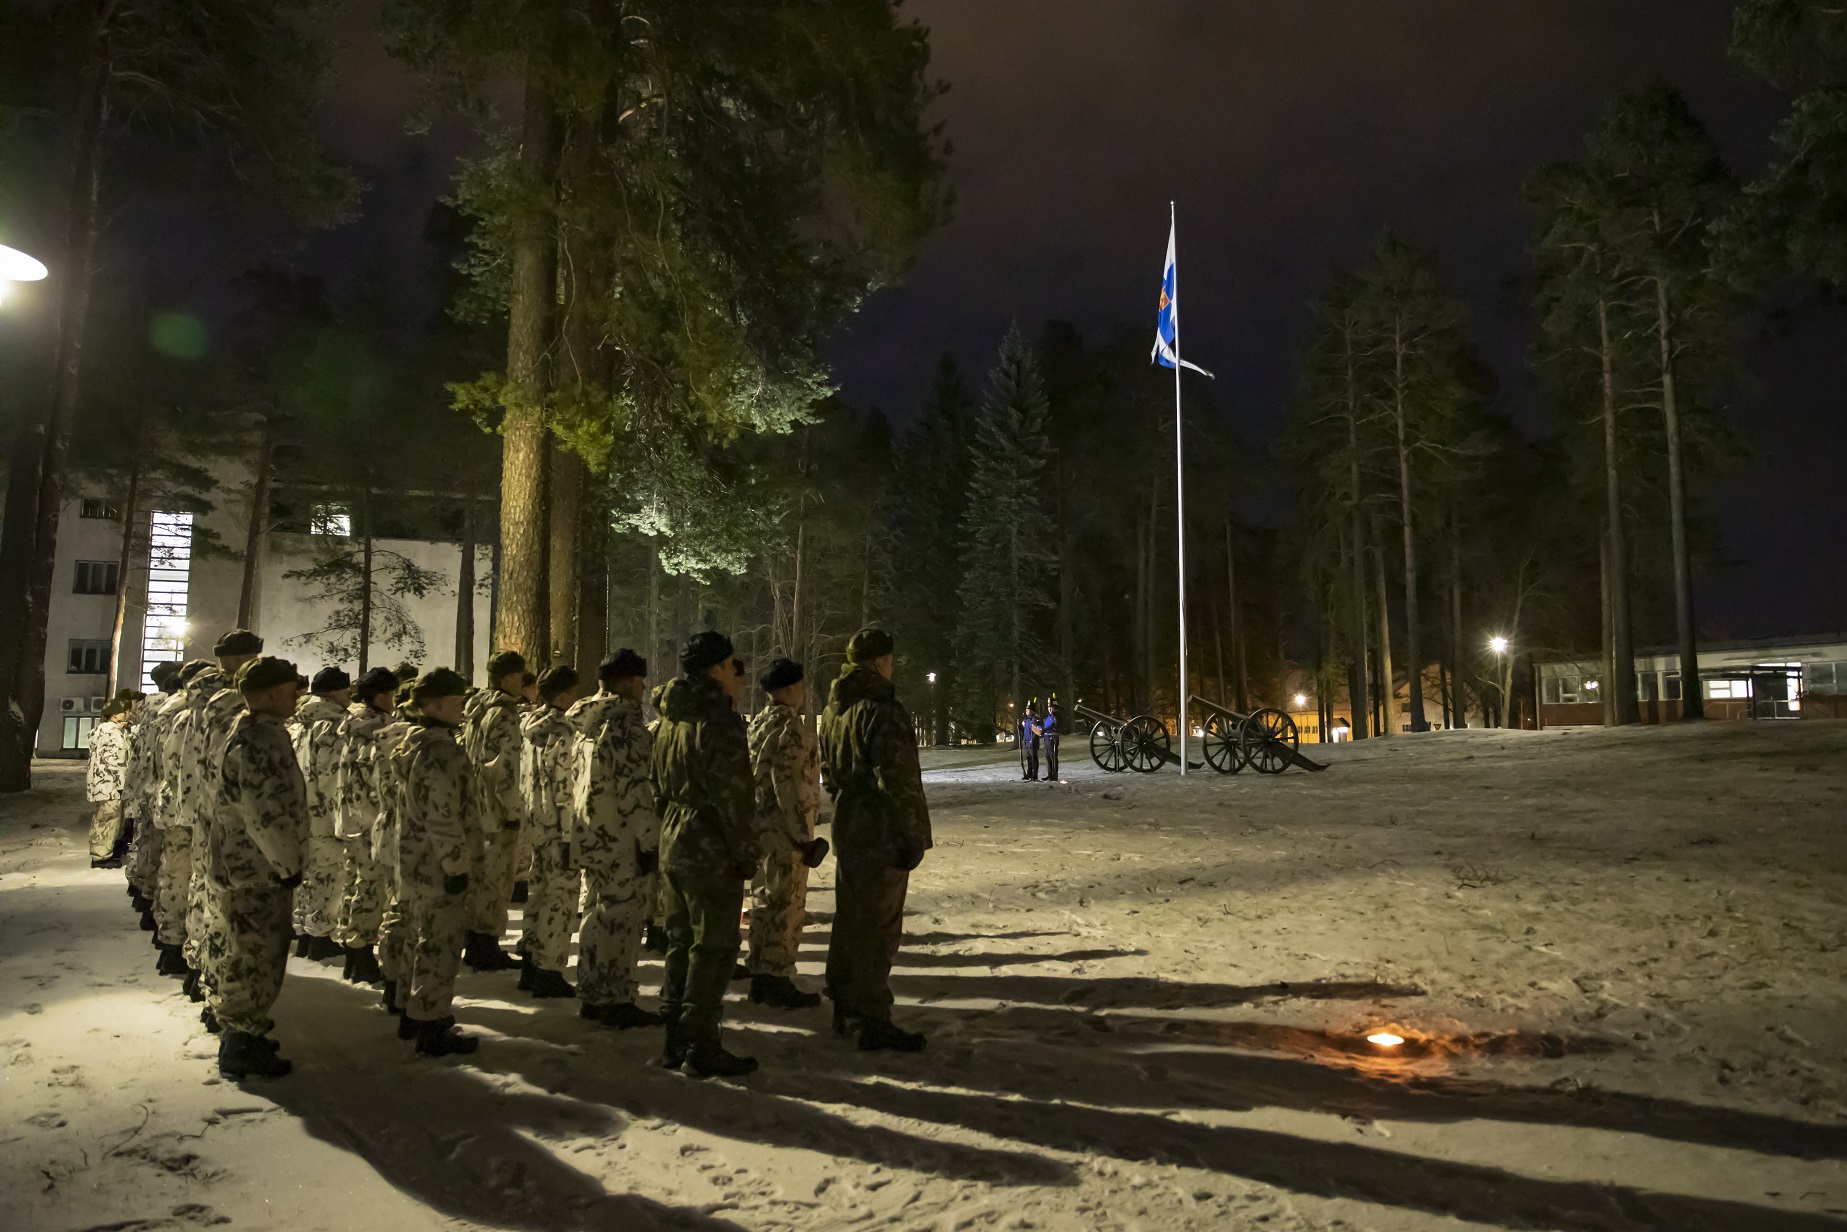 Rivissä lumipukuisia aliupseereita, lippu salossa, pimeä aamuyö, Vöyrin päivän perinteet alkamassa.